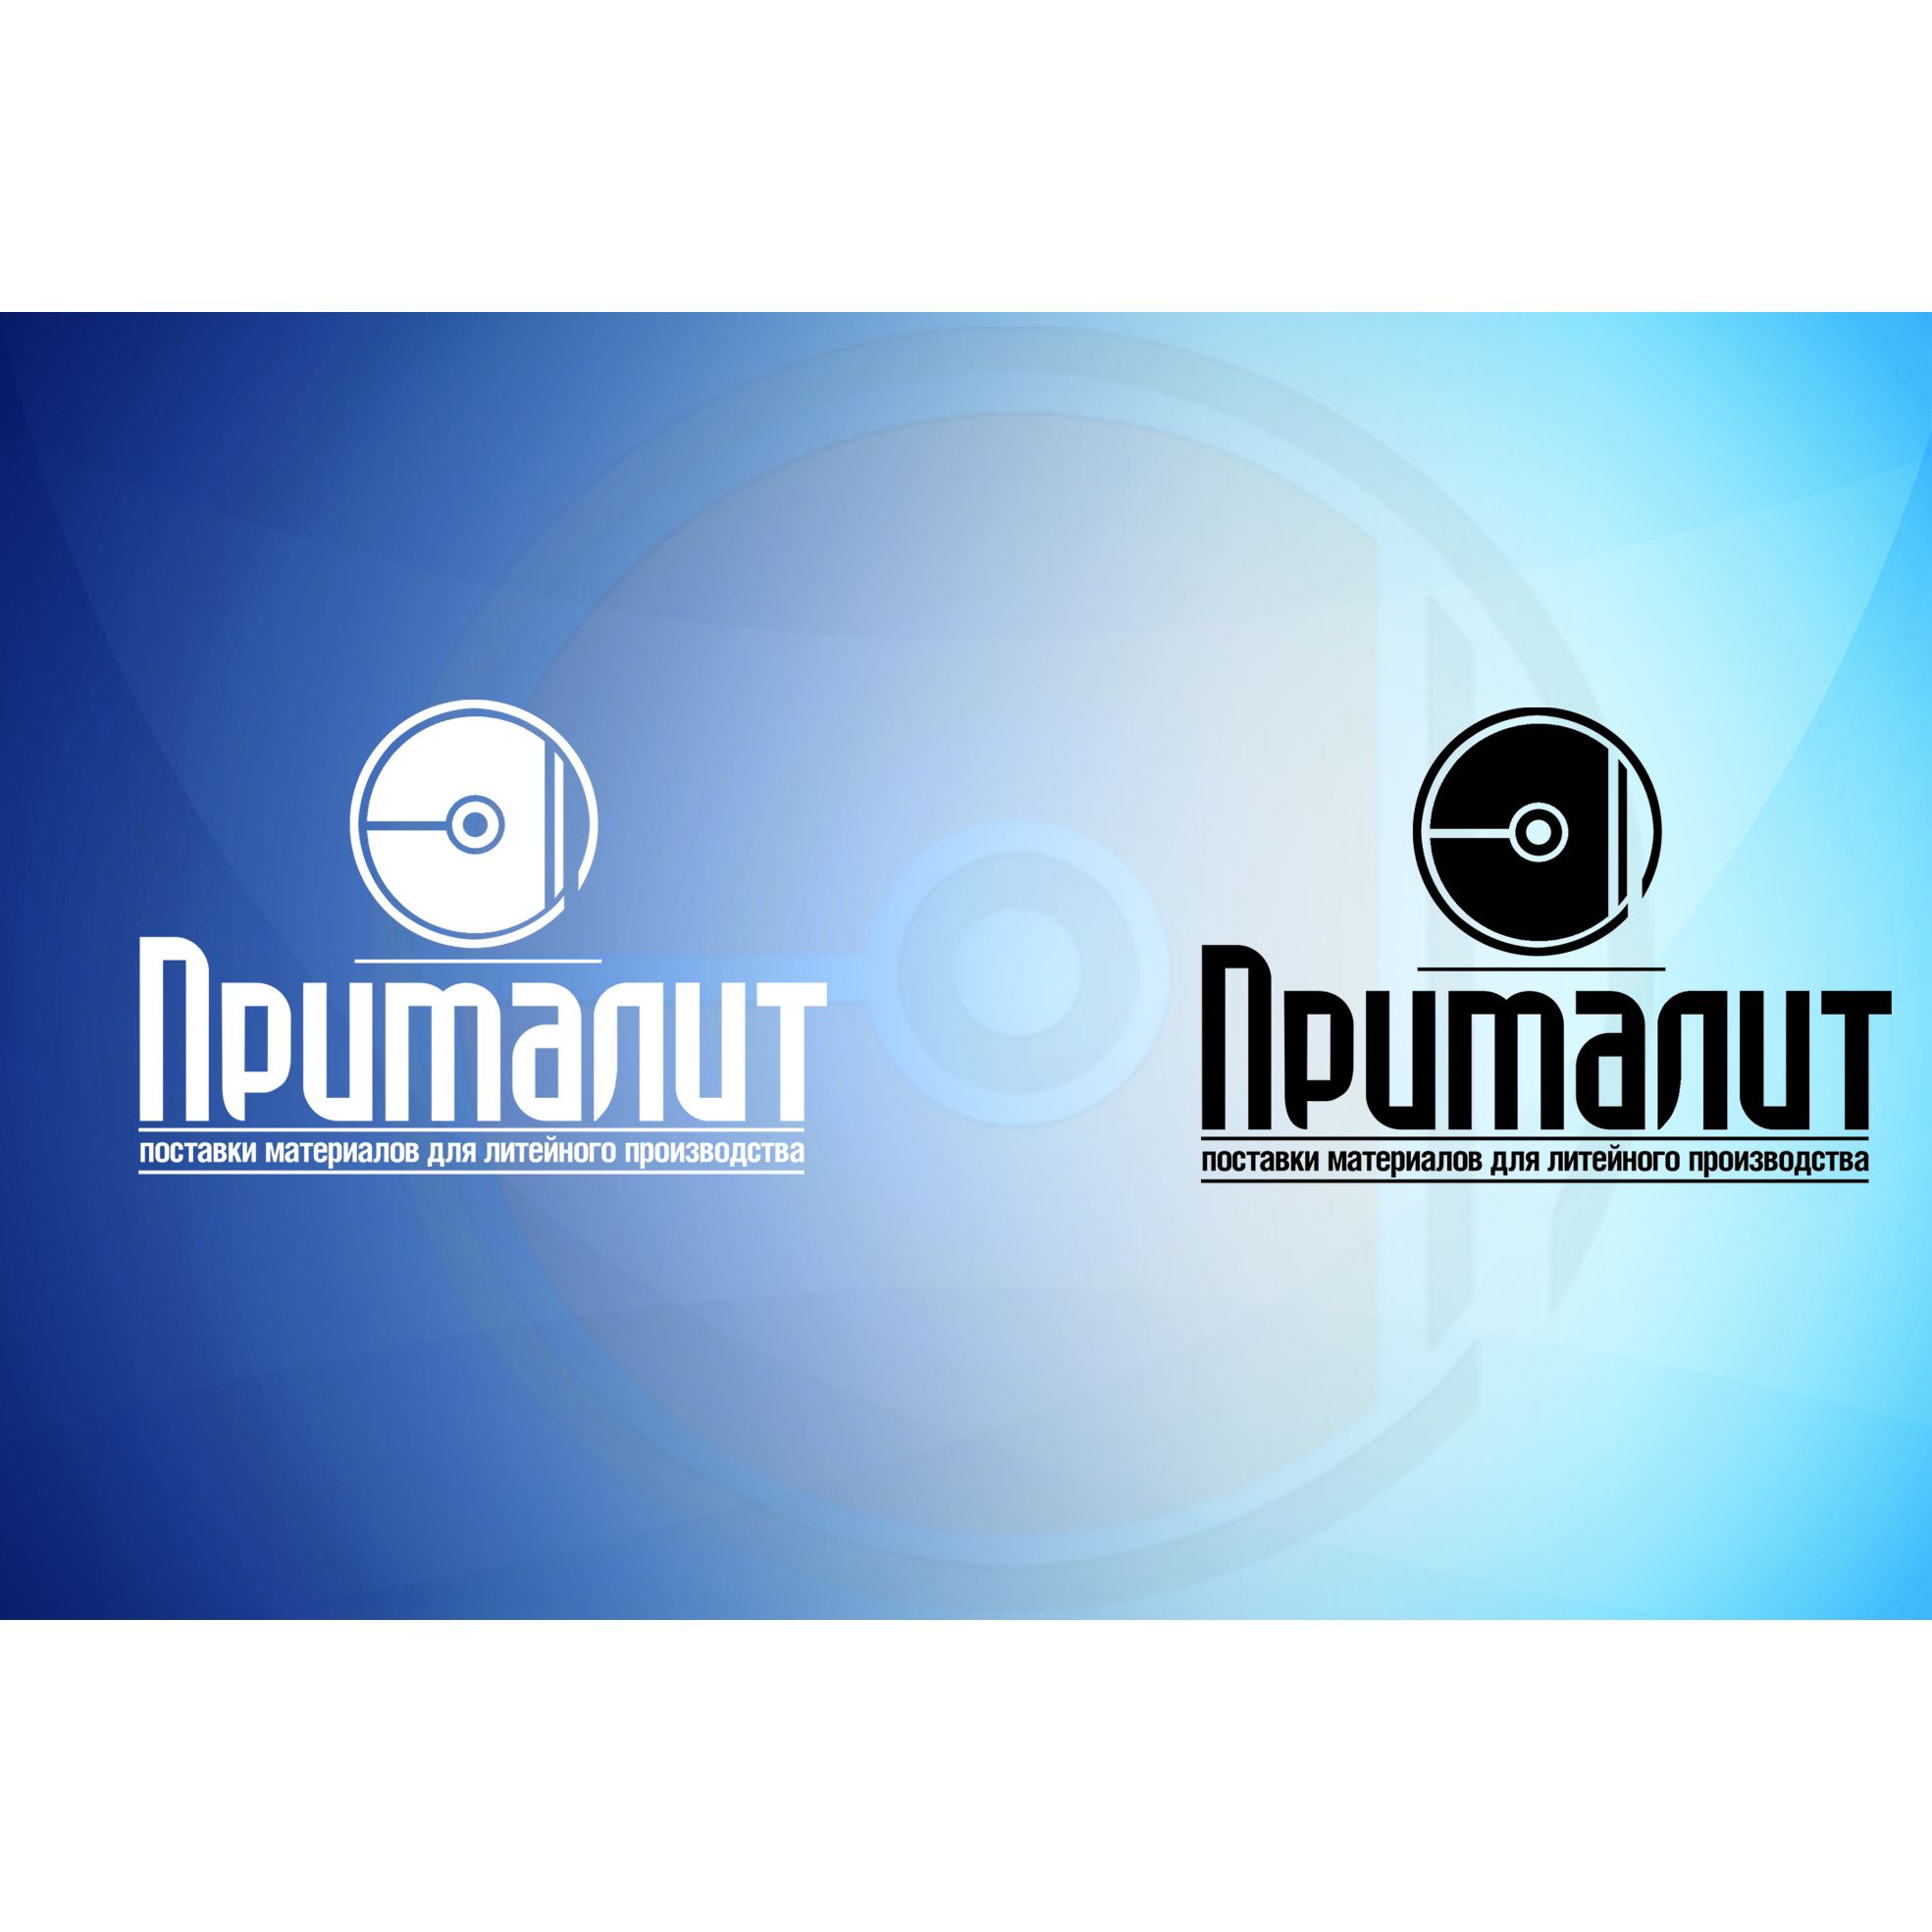 Логотип для Прималит - дизайнер djmirionec1